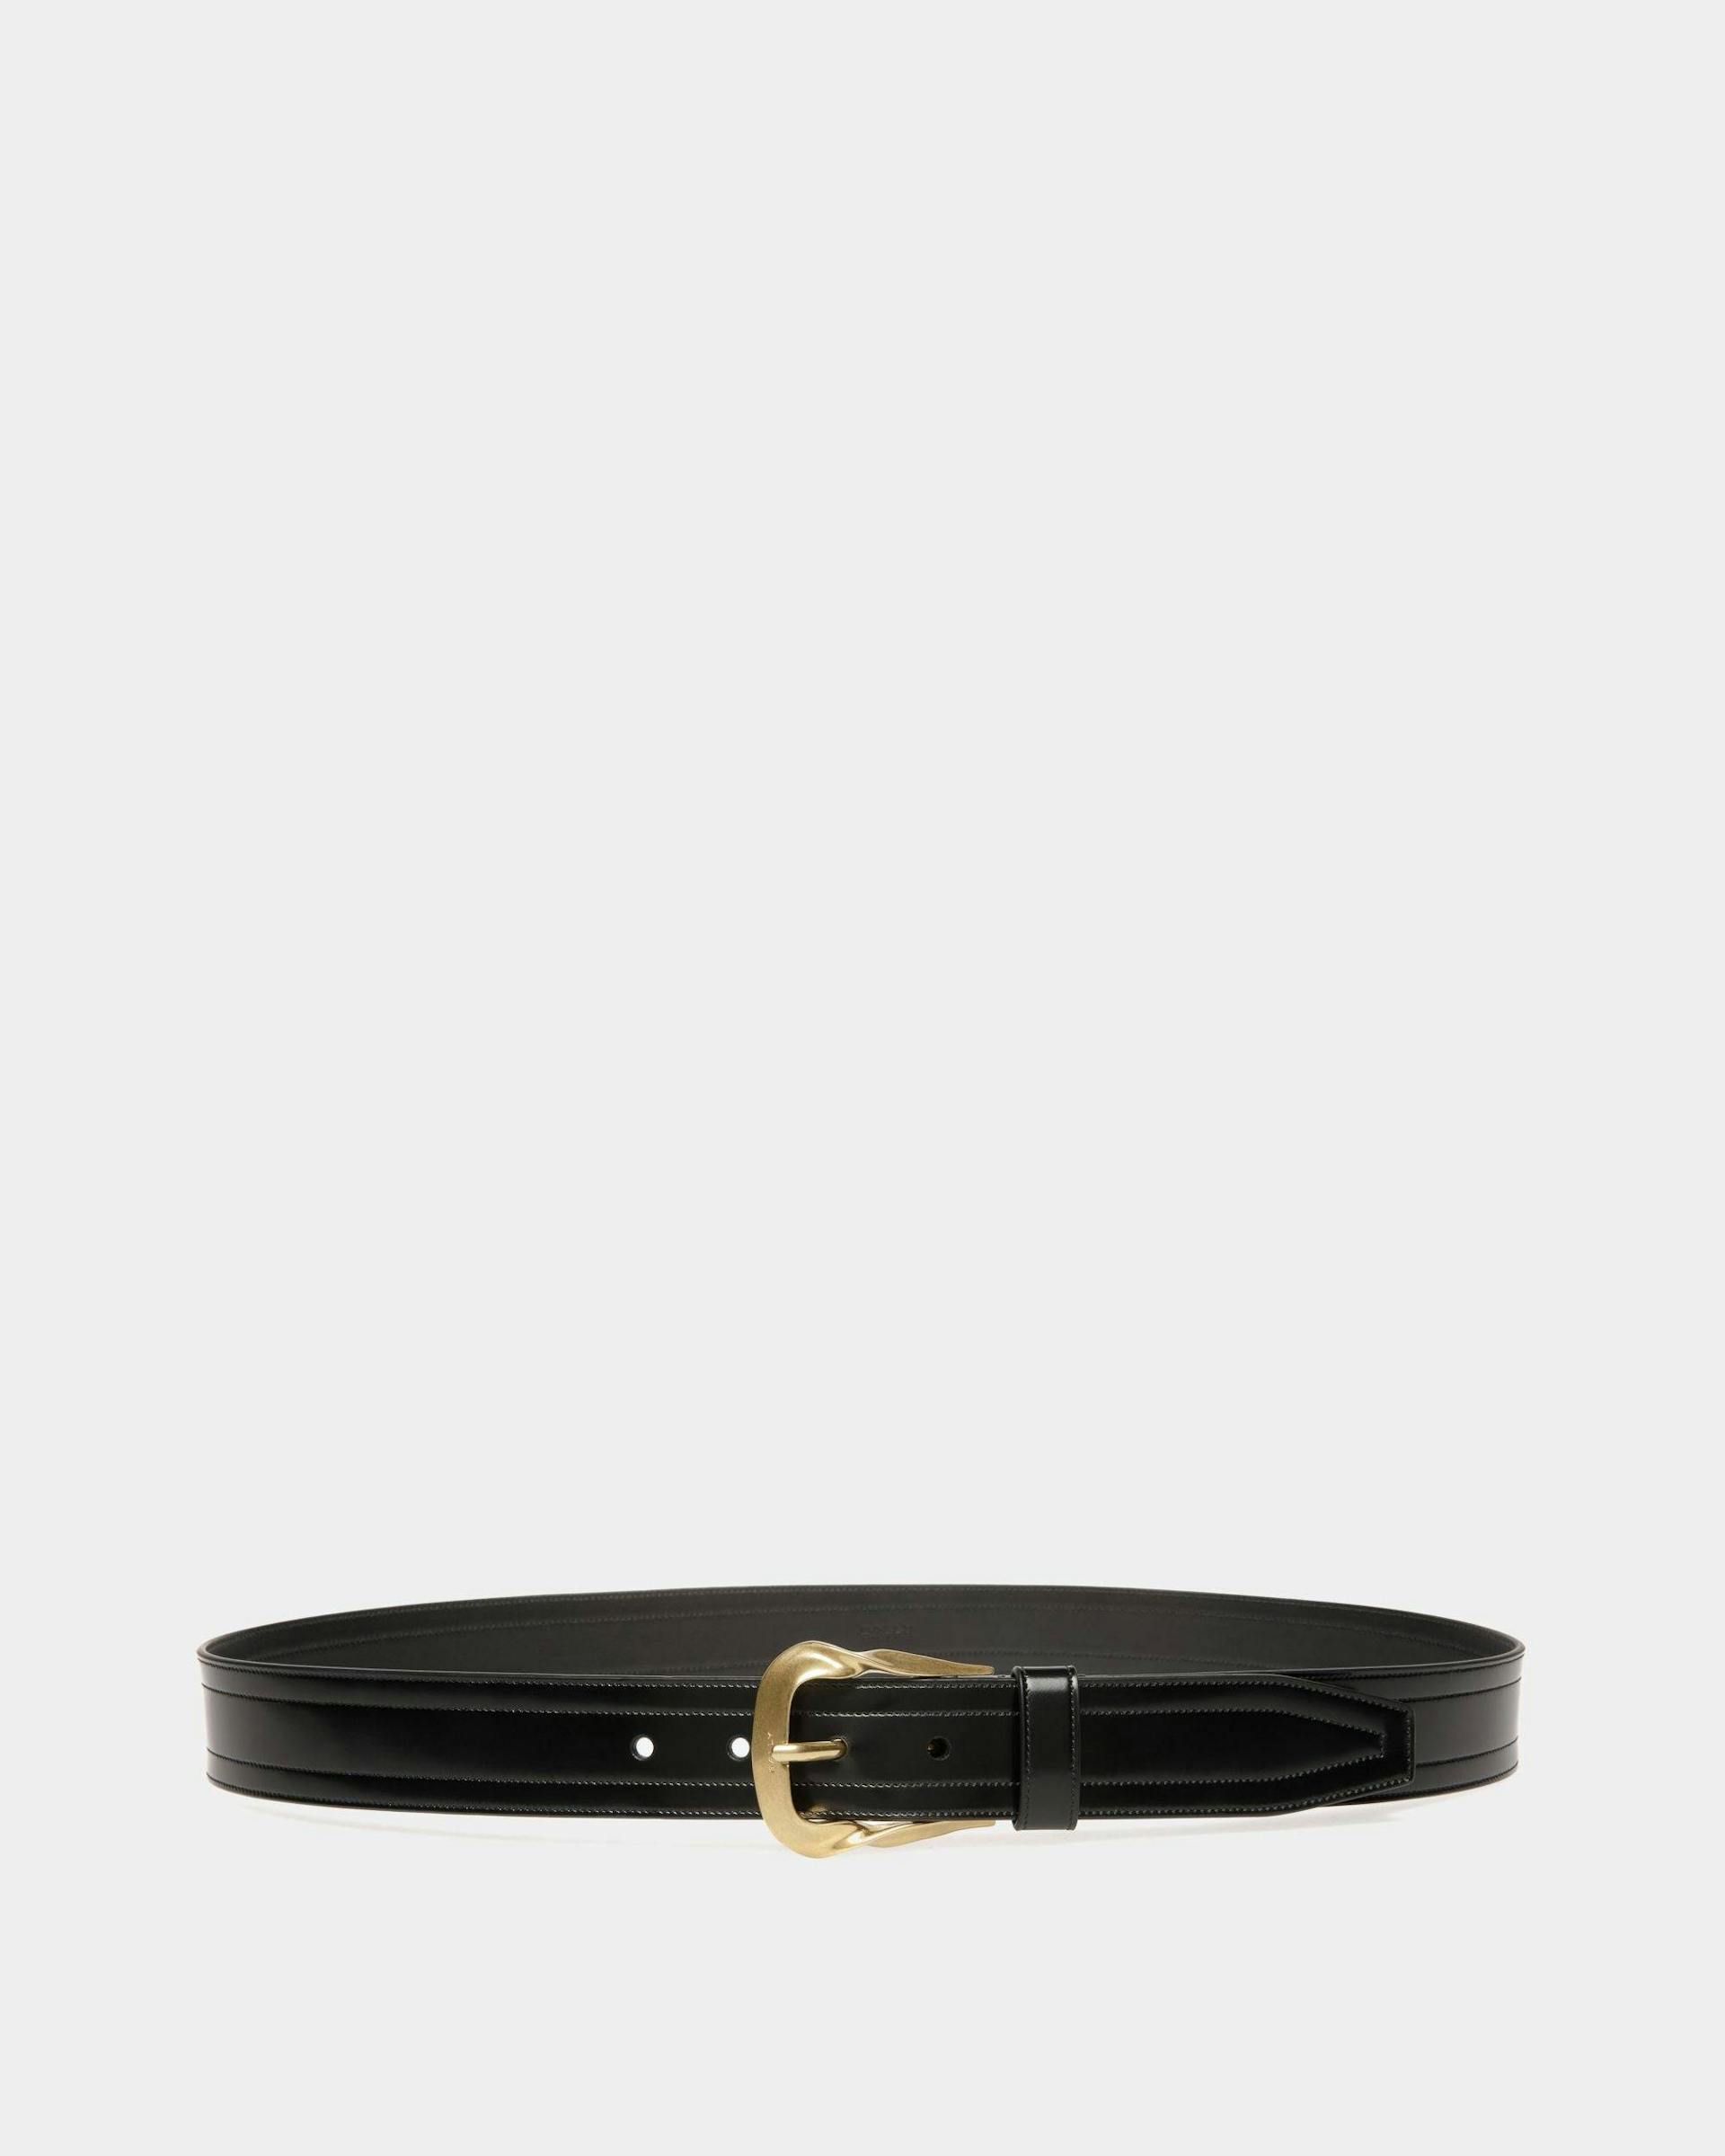 Men's Emblem Buckle 35mm Belt In Black Leather | Bally | Still Life Front